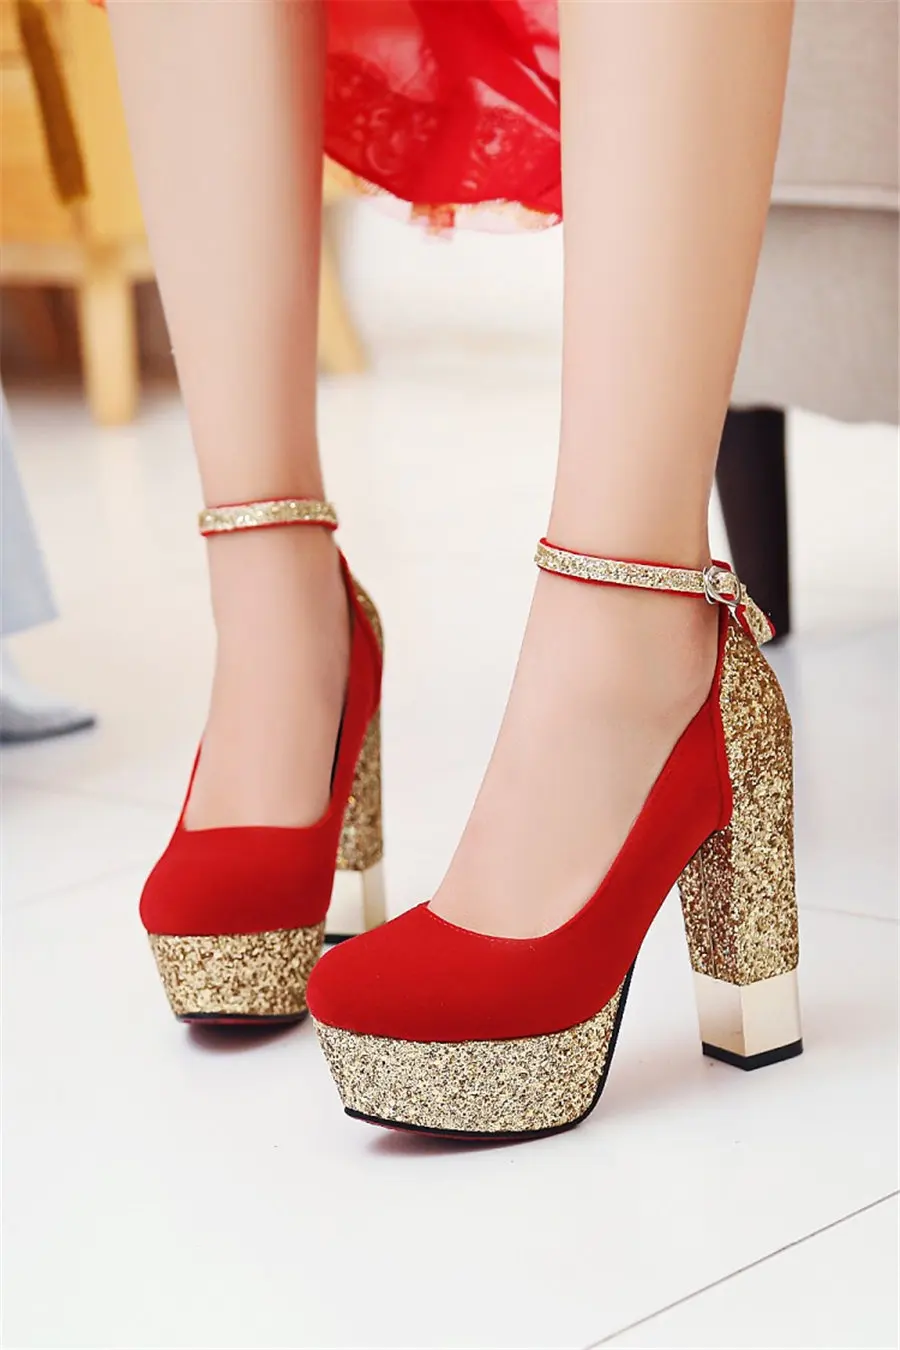 Серебристые женские туфли-лодочки на платформе для подружки невесты; туфли на высоком массивном квадратном каблуке; вечерние красные женские туфли из искусственной кожи, расшитые блестками, с ремешком на щиколотке